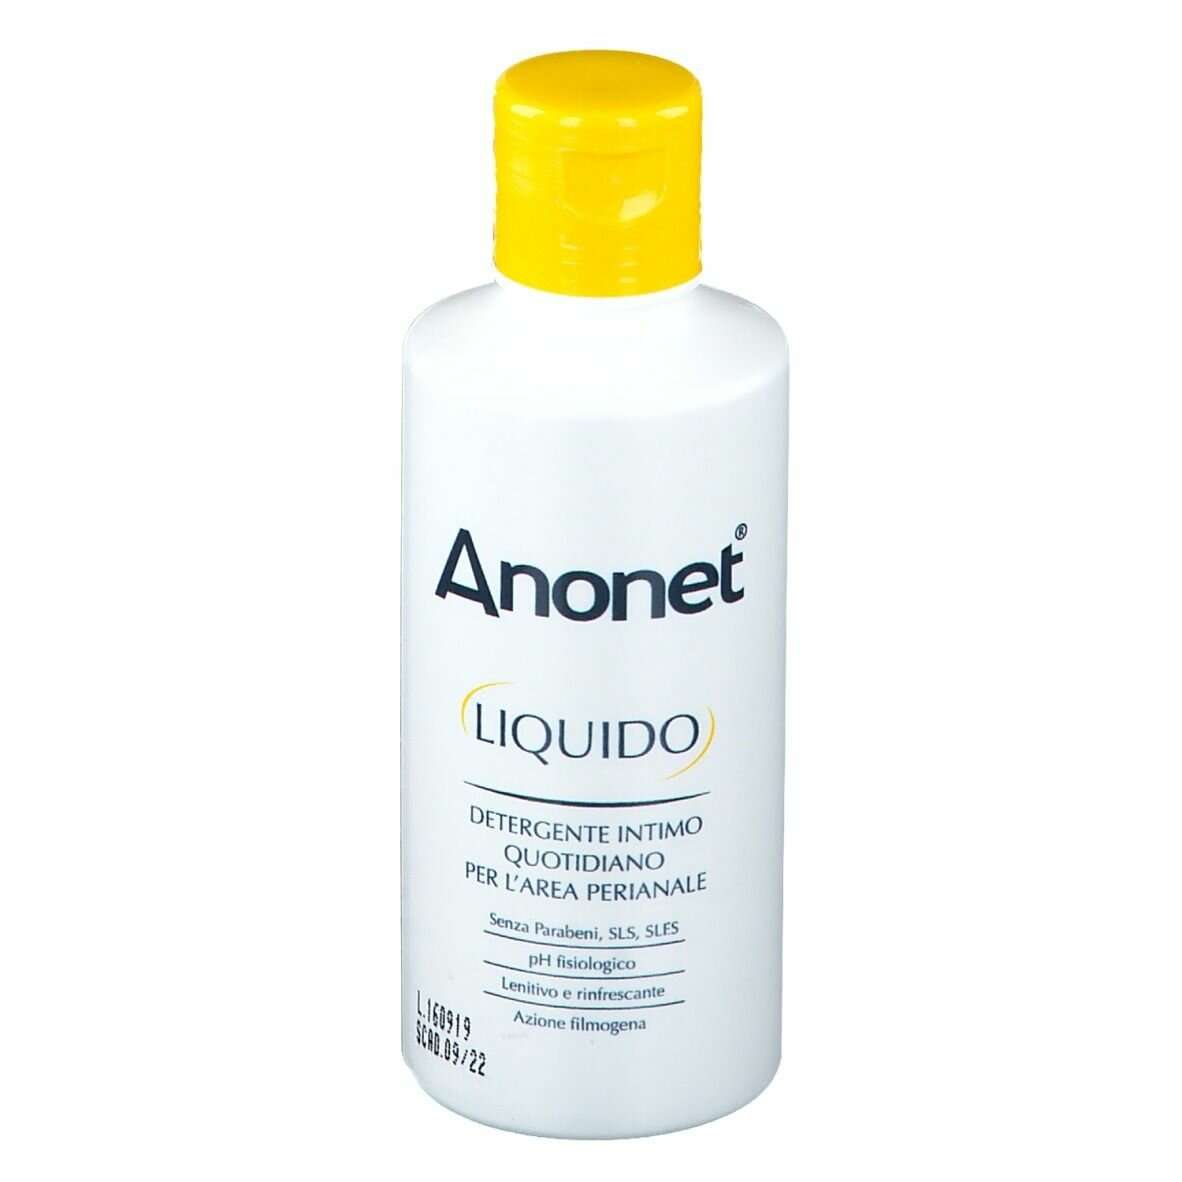 Anonet - Liquido - 150ml